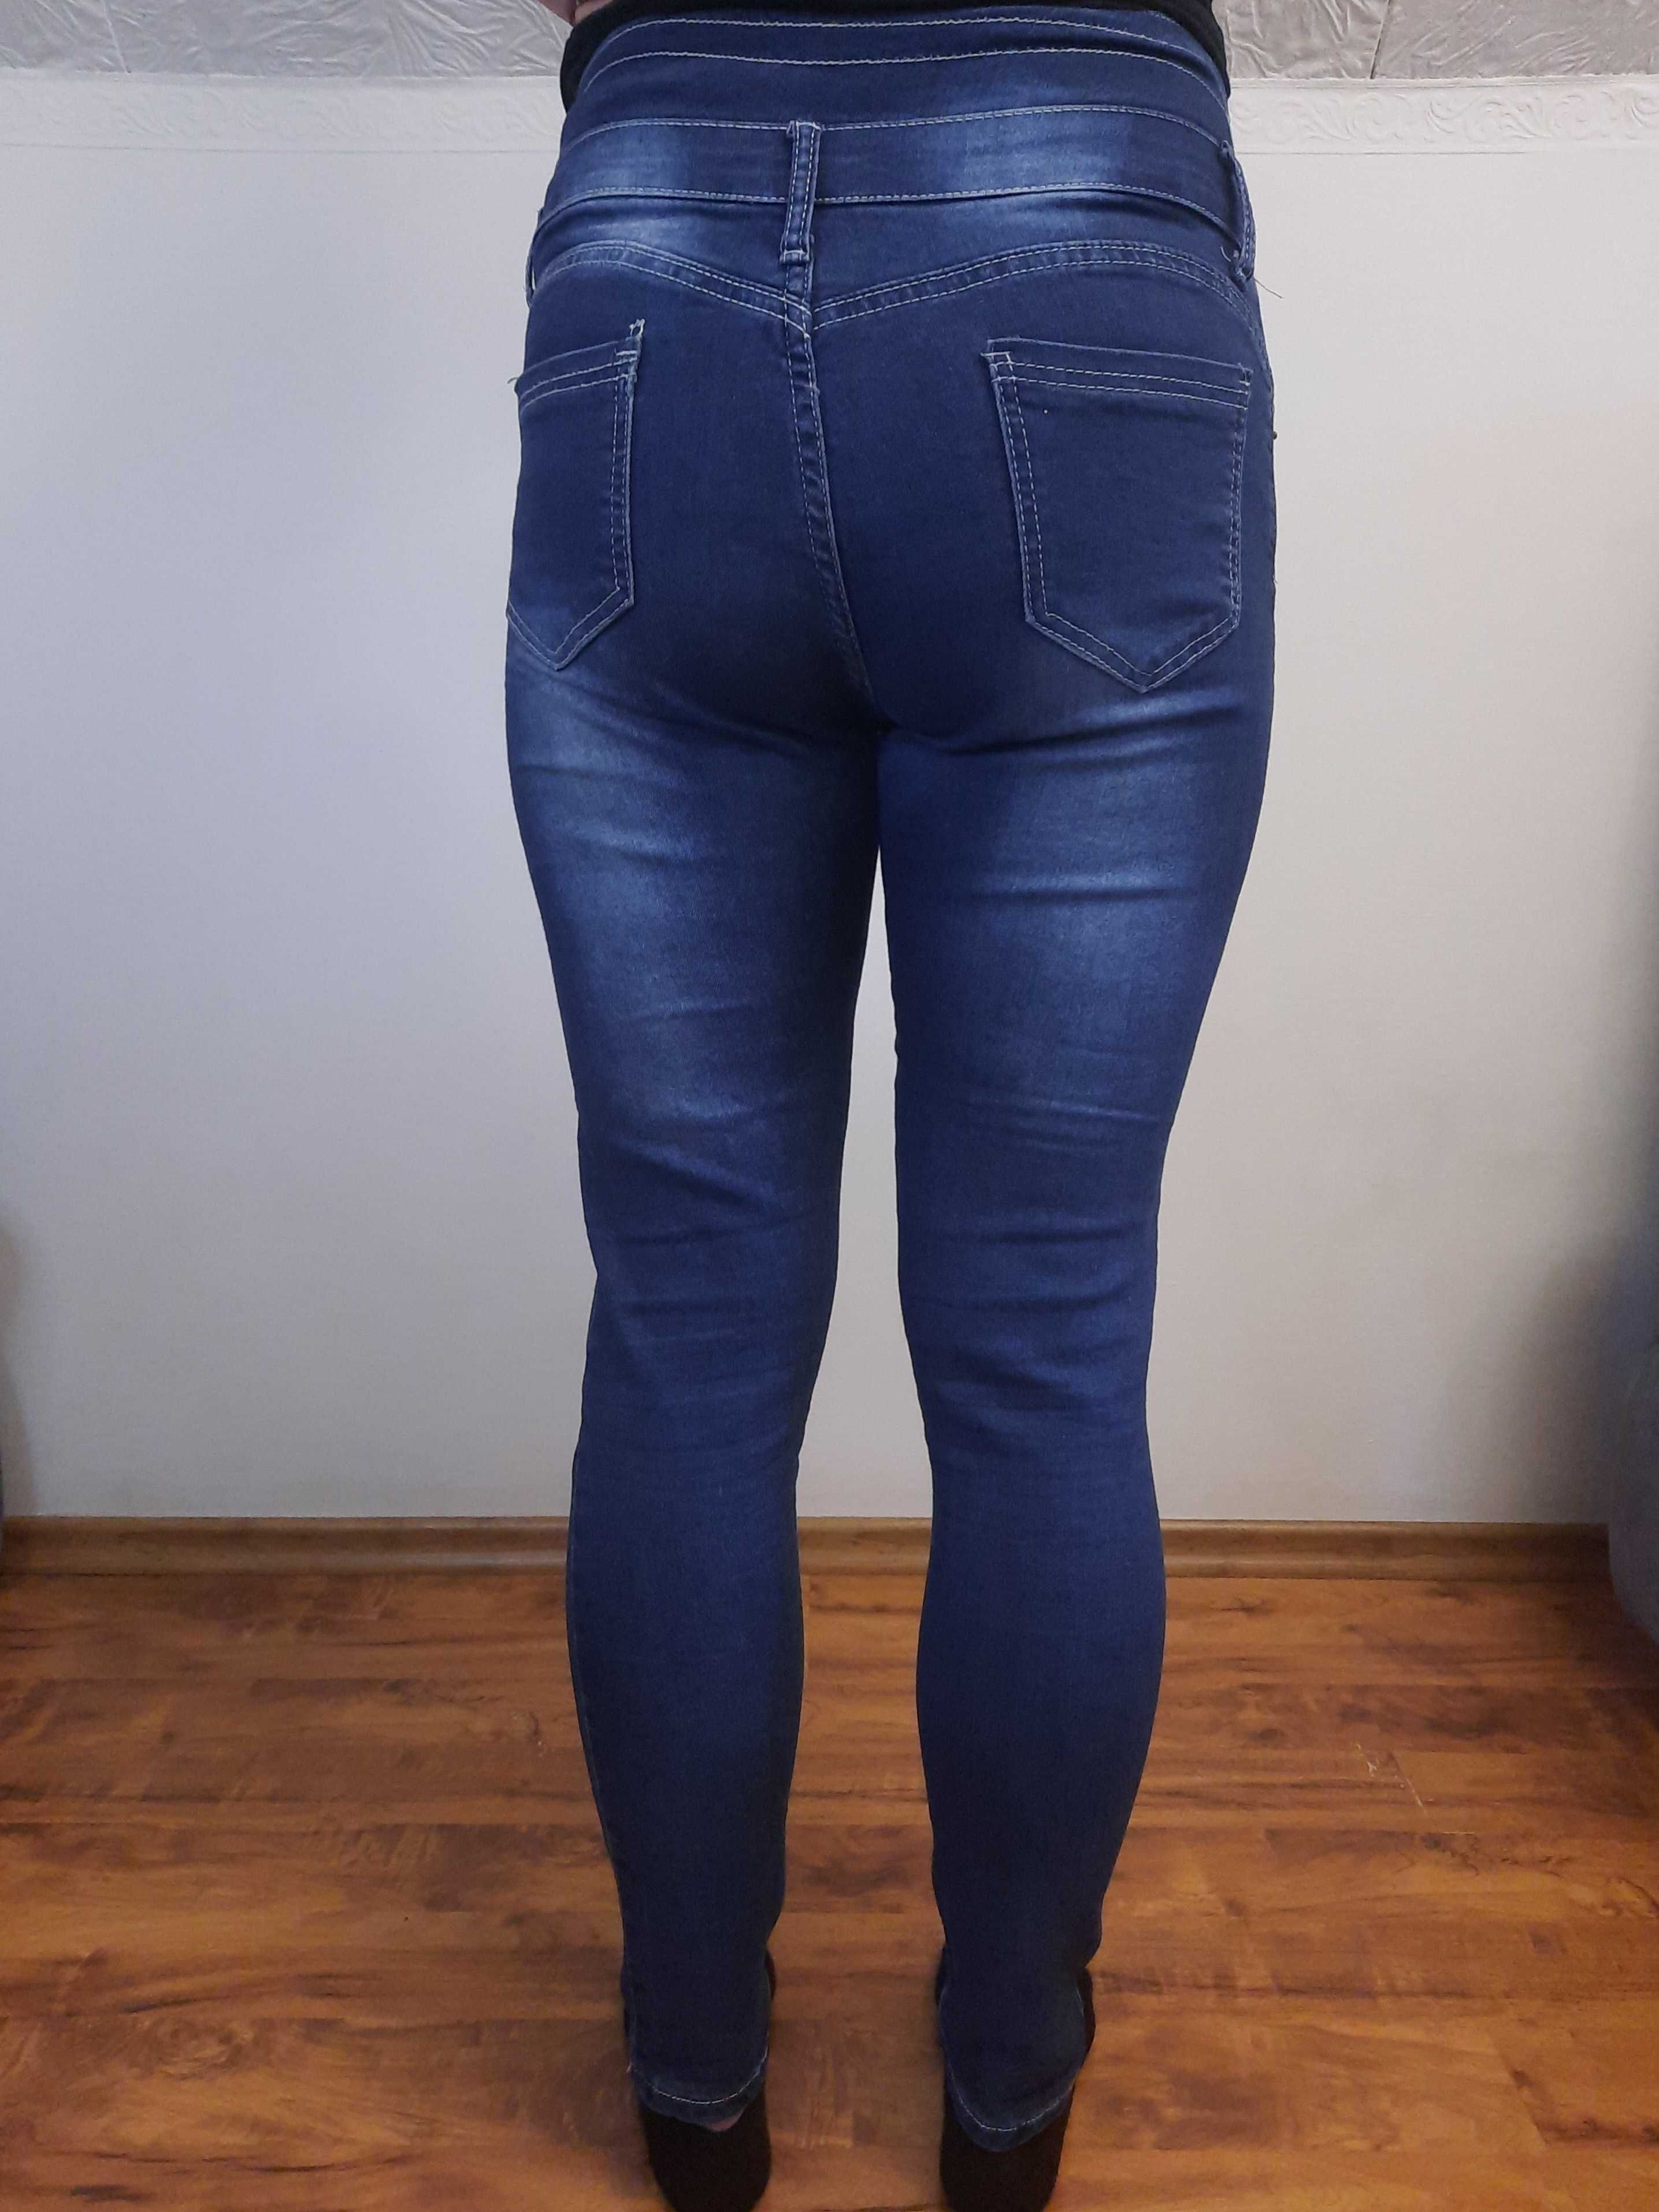 Spodnie jeansowe wysoki stan jeansy rozmiar M 38